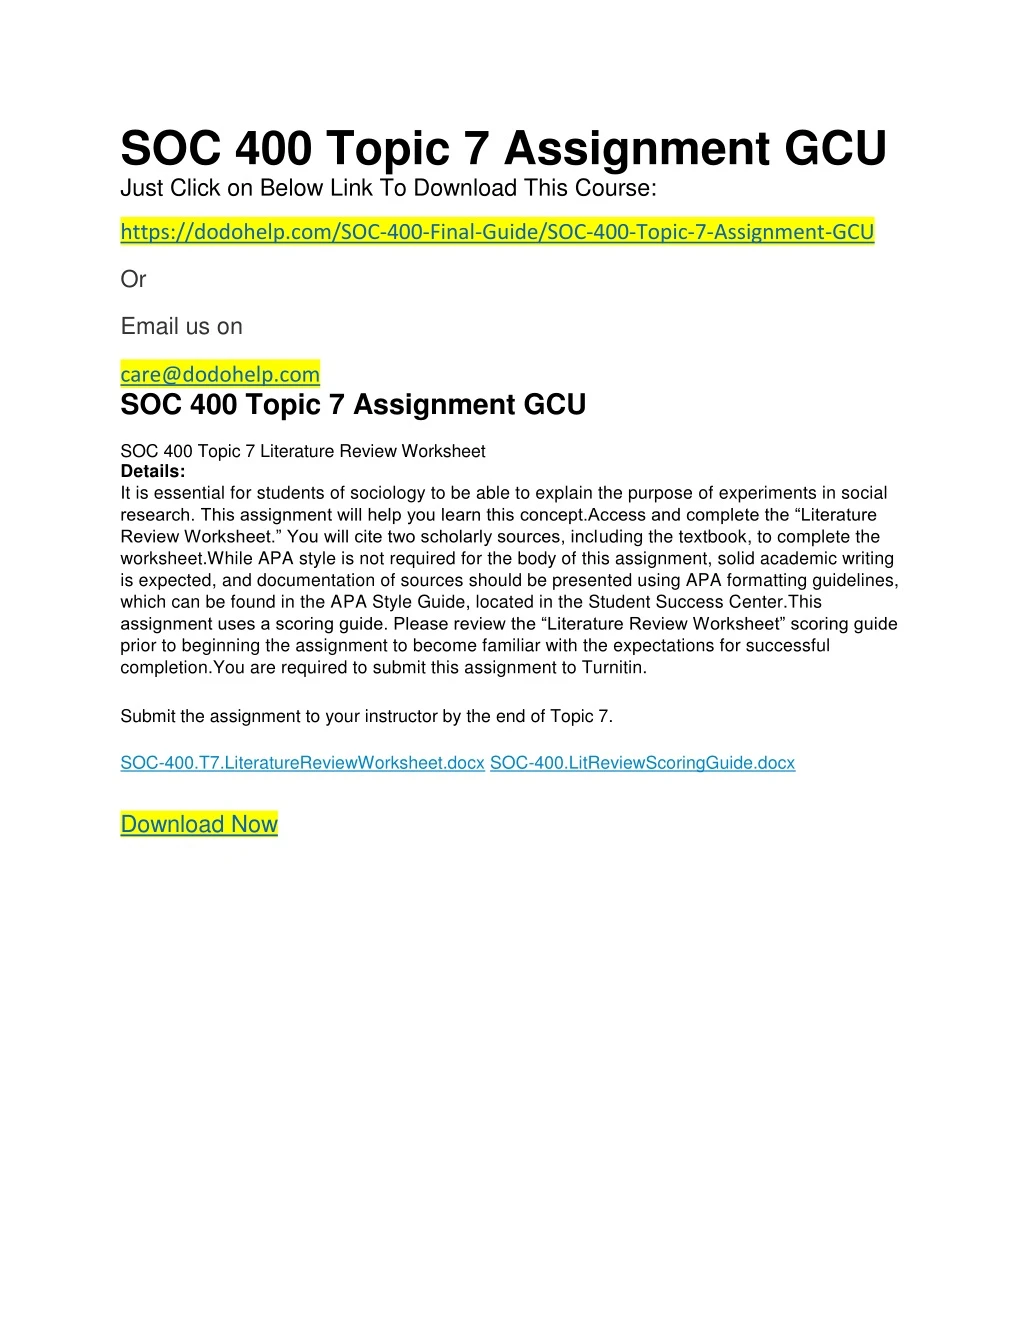 soc 400 topic 7 assignment gcu just click